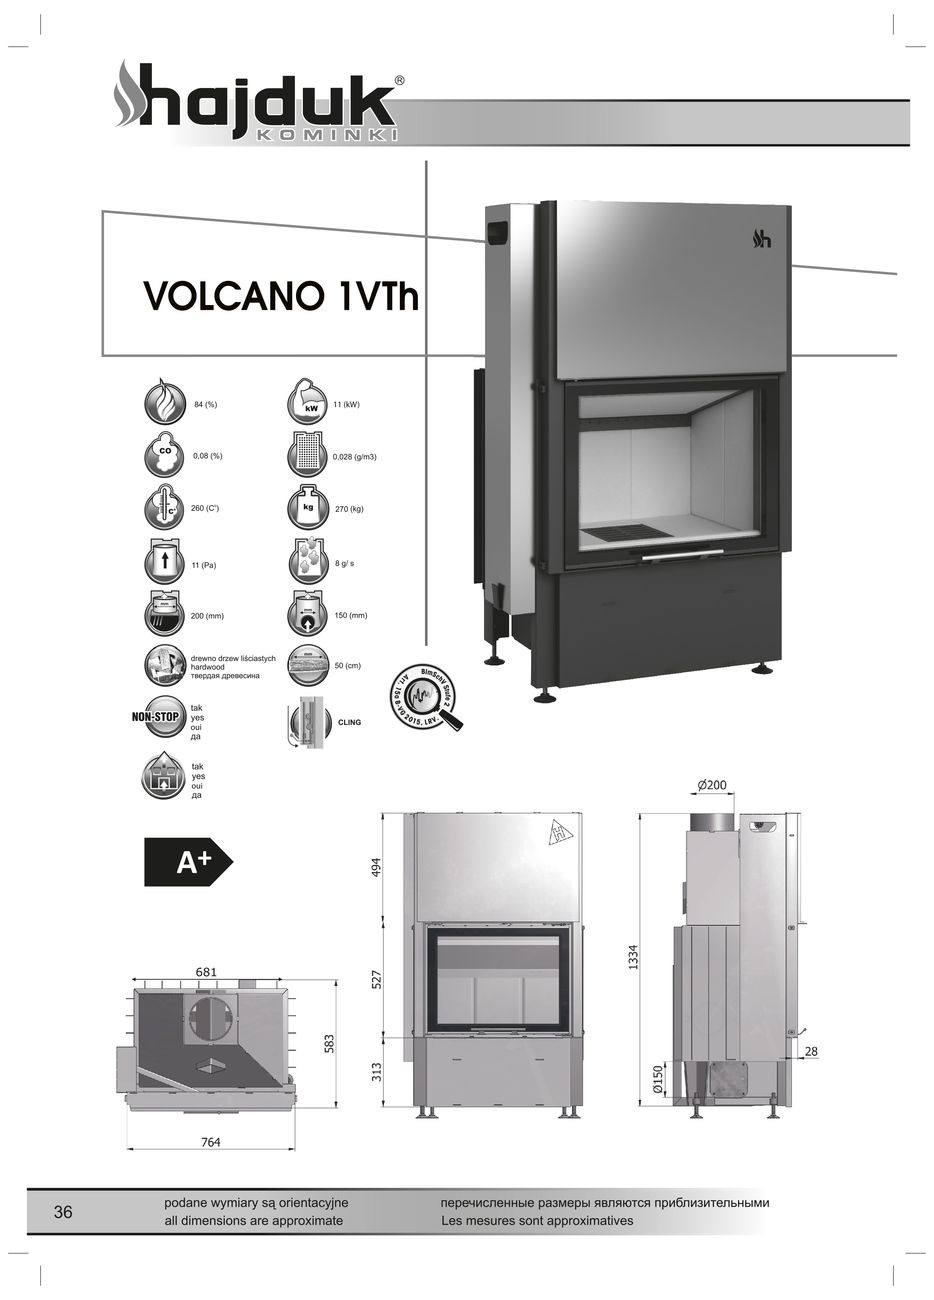 Hajduk Volcano 1 VTh wymiary wkładu kominkowego Hajduk Volcano 1VTh